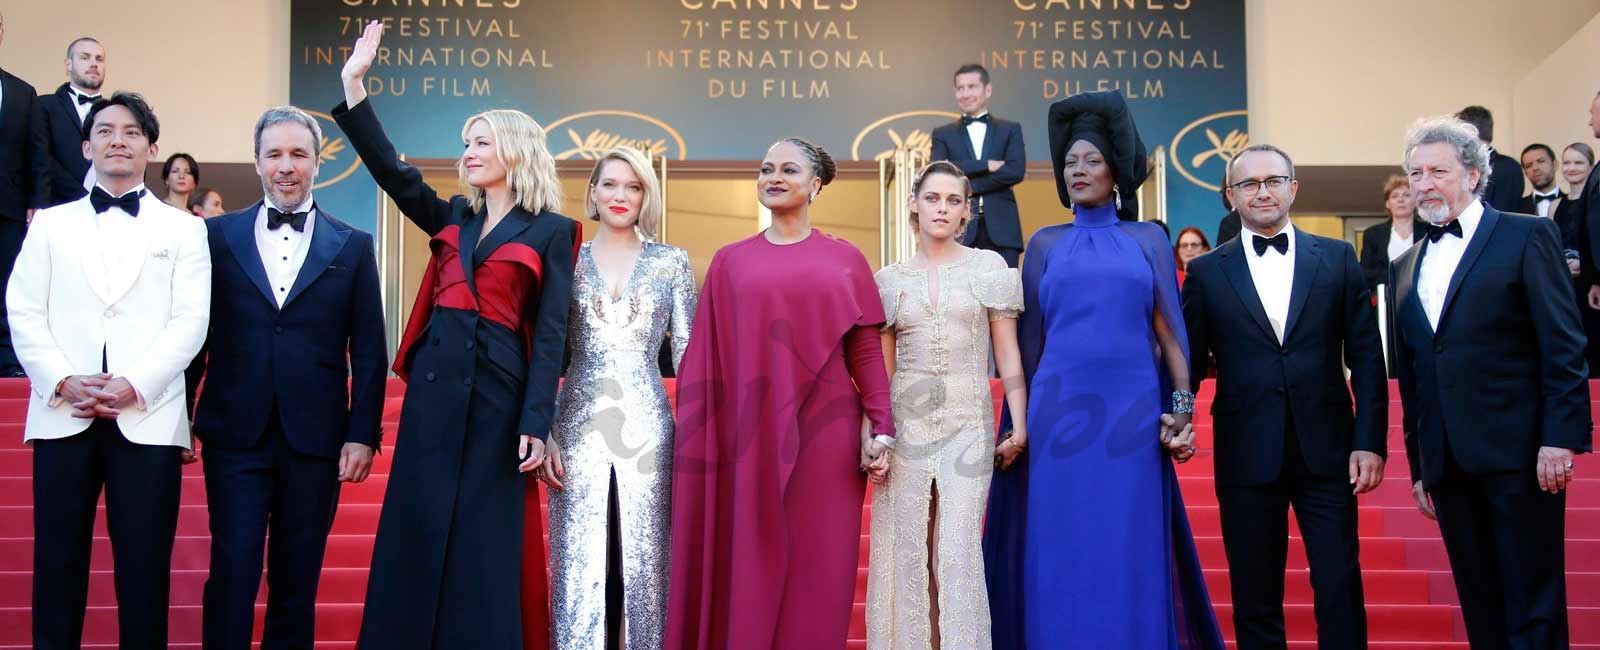 Los mejores looks de la gala de clausura de Cannes 2018